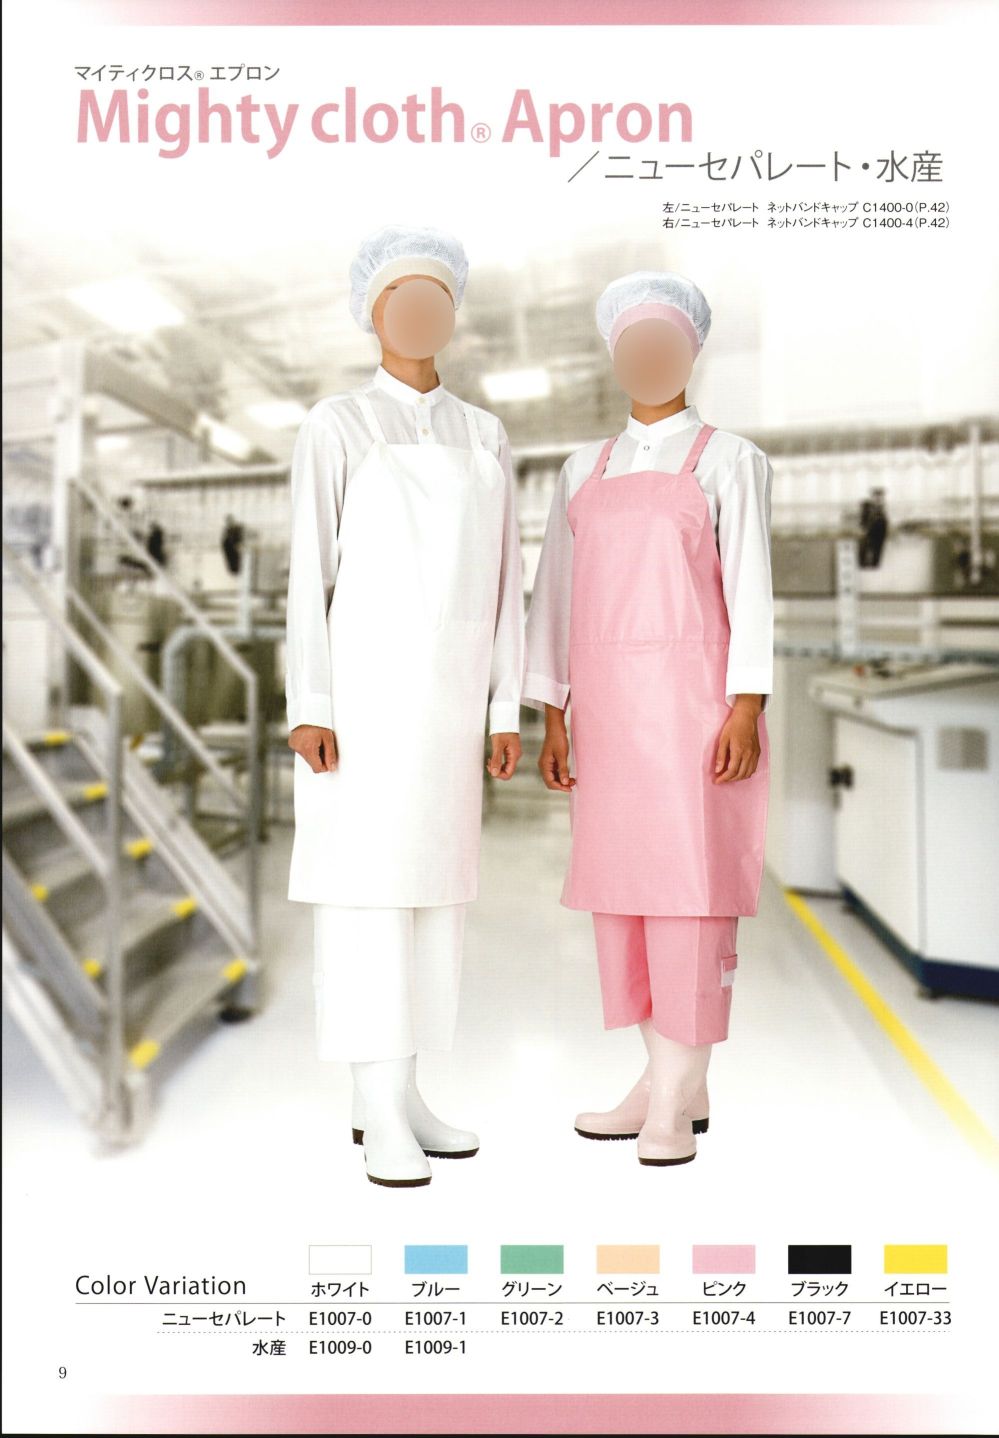 ユニフォーム1.COM 食品白衣jp 食品工場用 ワコウエプロン 2021 業務用